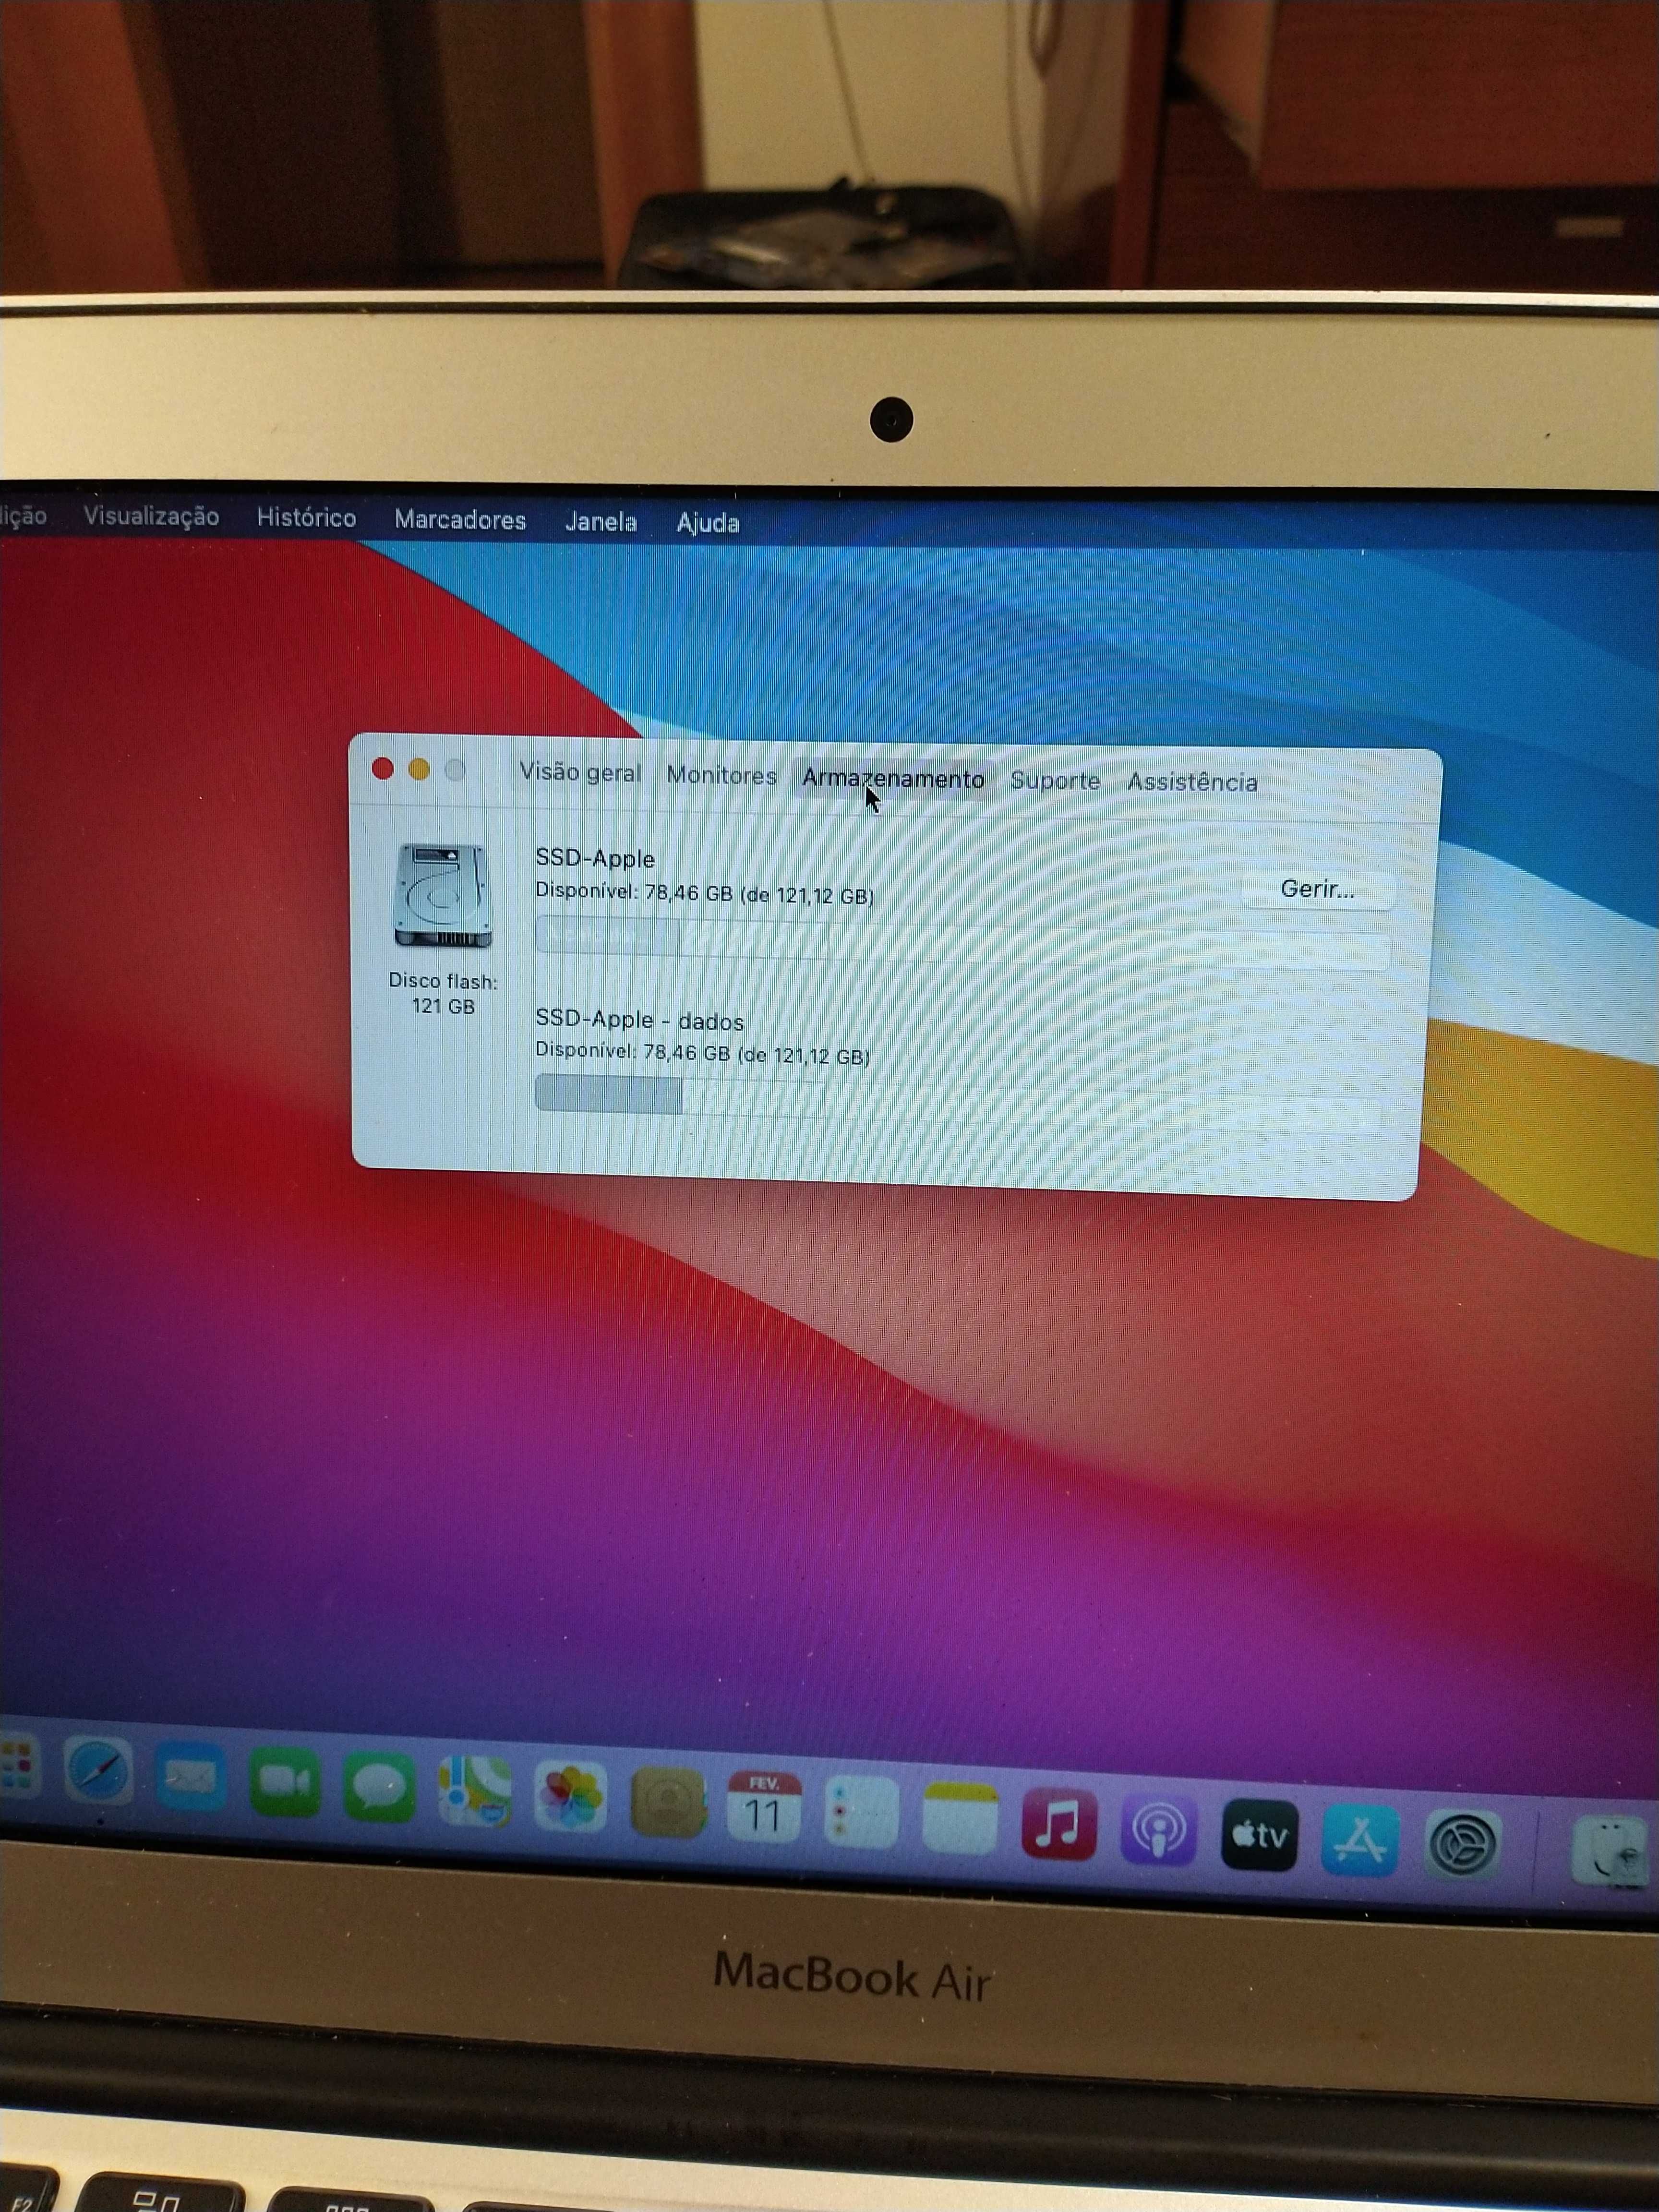 MacBook air 11 polegadas modelo A1465 versao 6.1  com i5 4gb ram